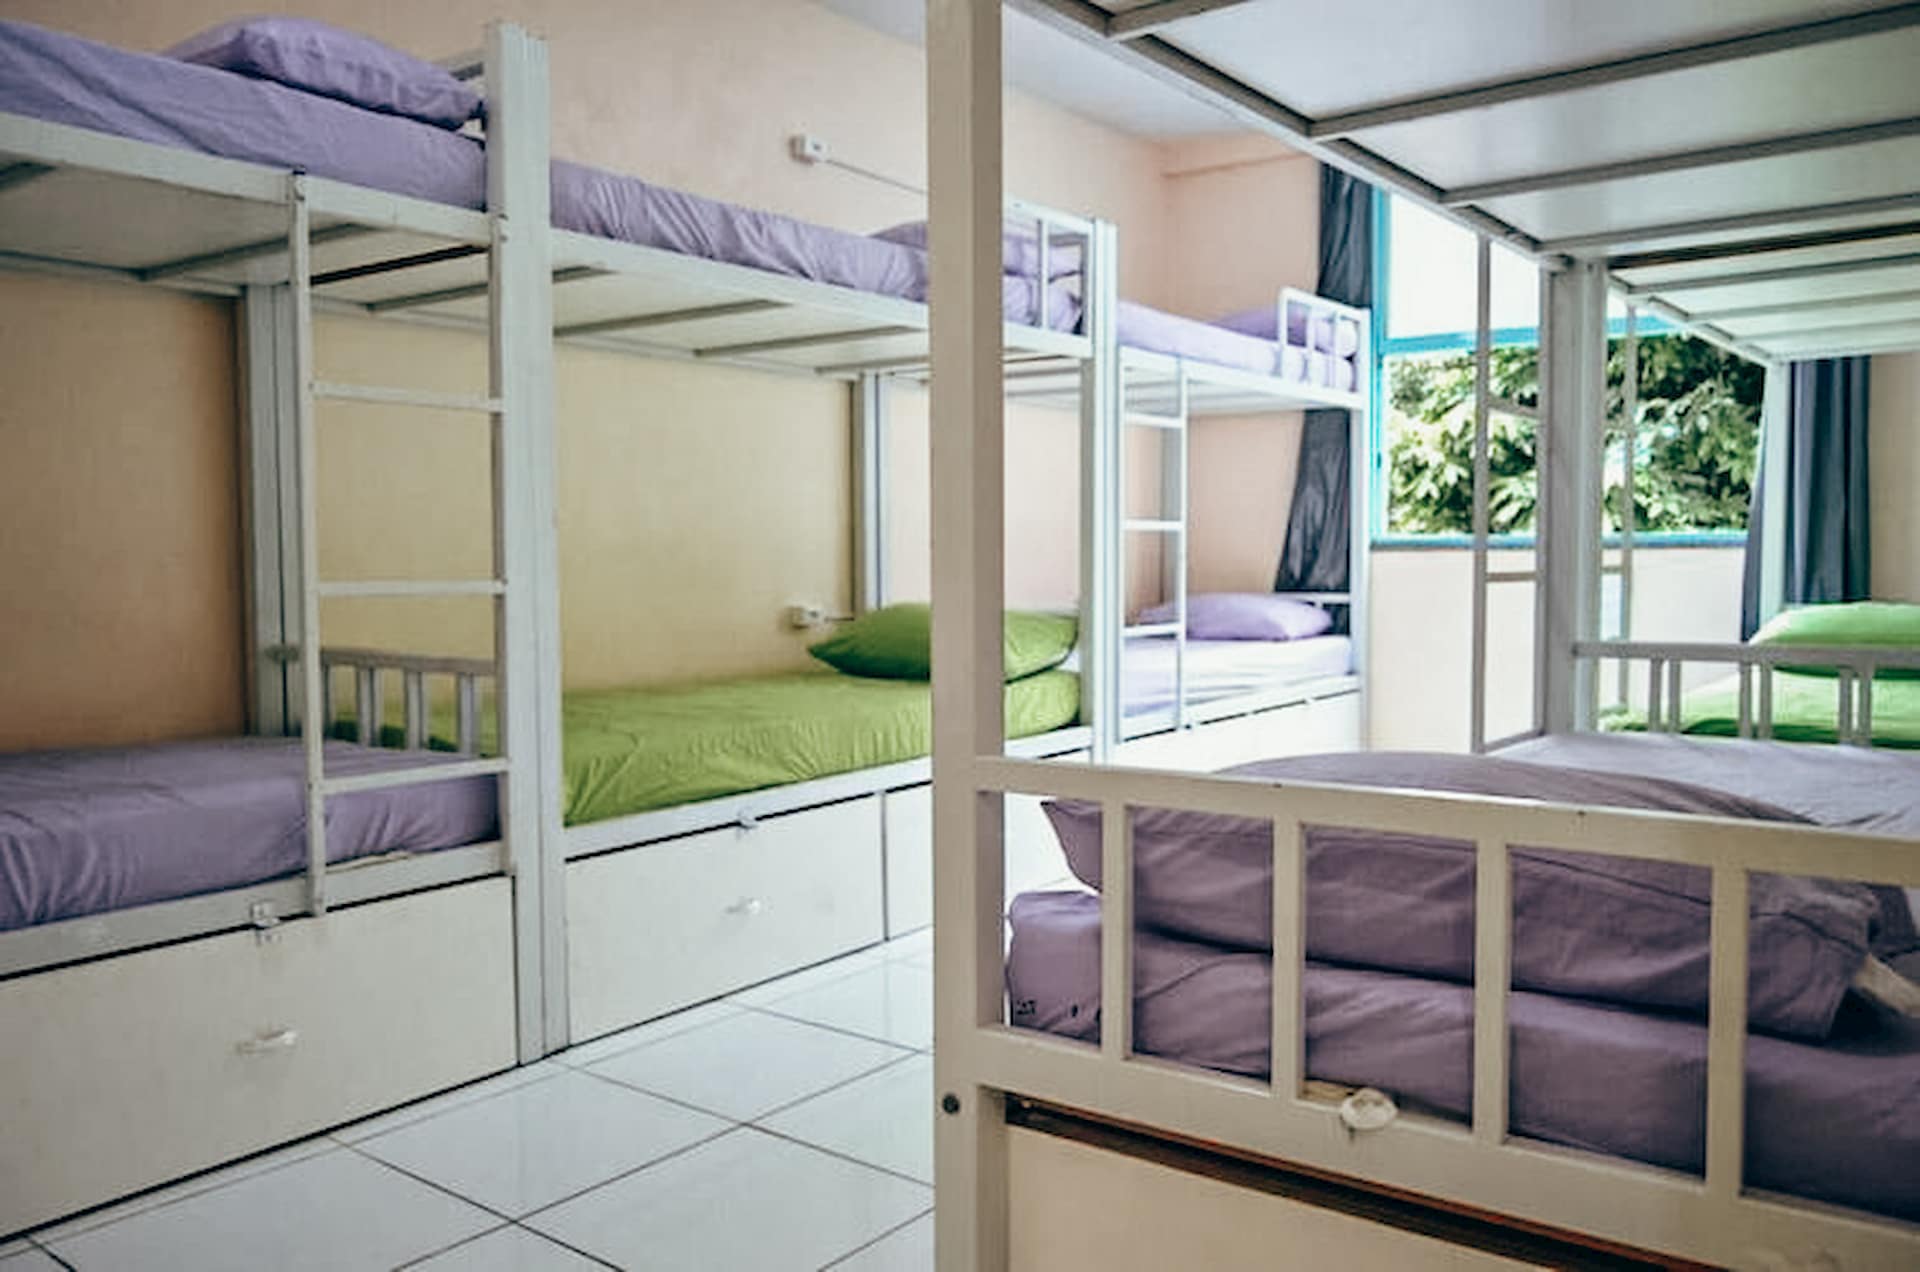 Pokój wieloosobowy w Hostelu Solaris w Rio | Gdzie spać w Rio de Janeiro